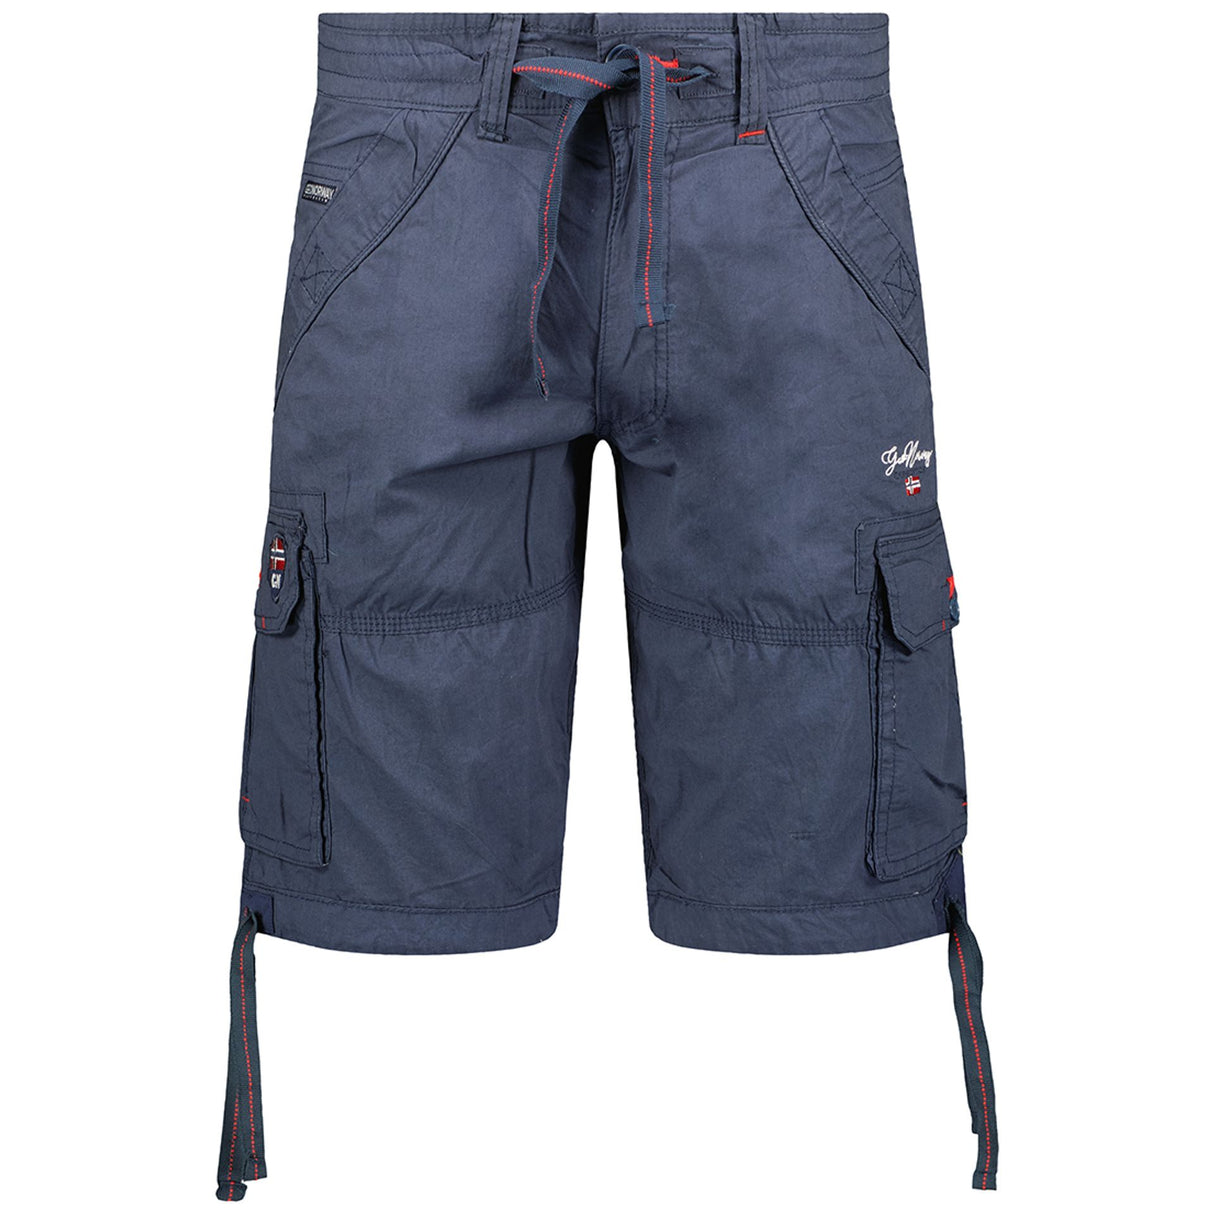 Men's Spring/Summer shorts Shorts with frog closure  6-pocket shorts Solid color shorts Cotton shorts Wash at 30° C Visible logo